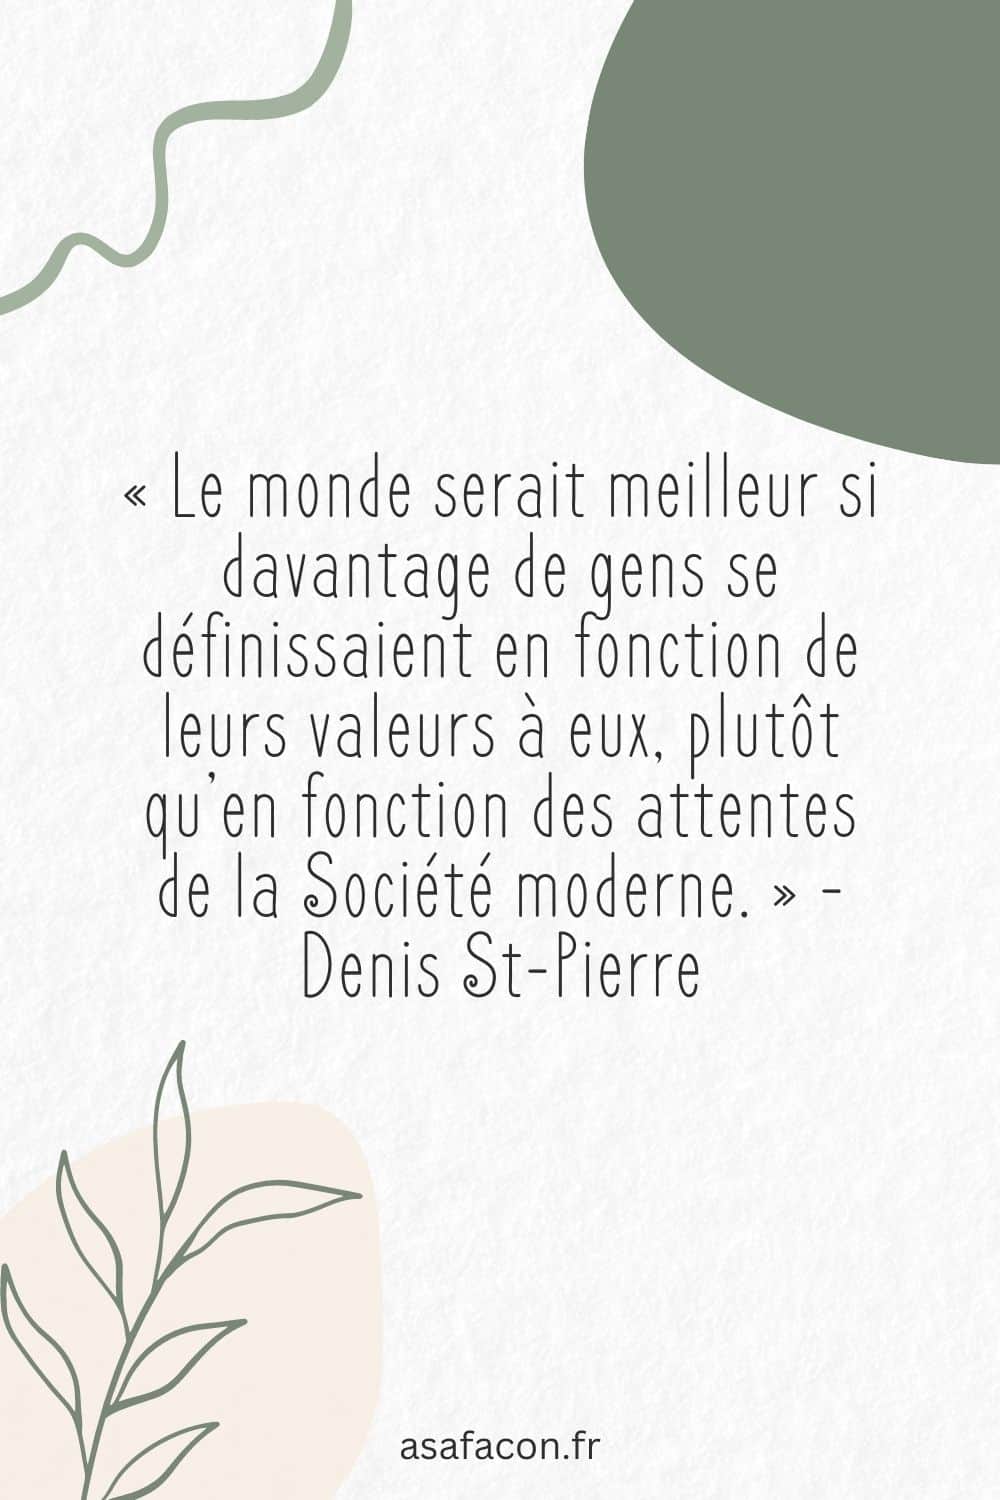 « Le monde serait meilleur si davantage de gens se définissaient en fonction de leurs valeurs à eux, plutôt qu’en fonction des attentes de la Société moderne. » - Denis St-Pierre